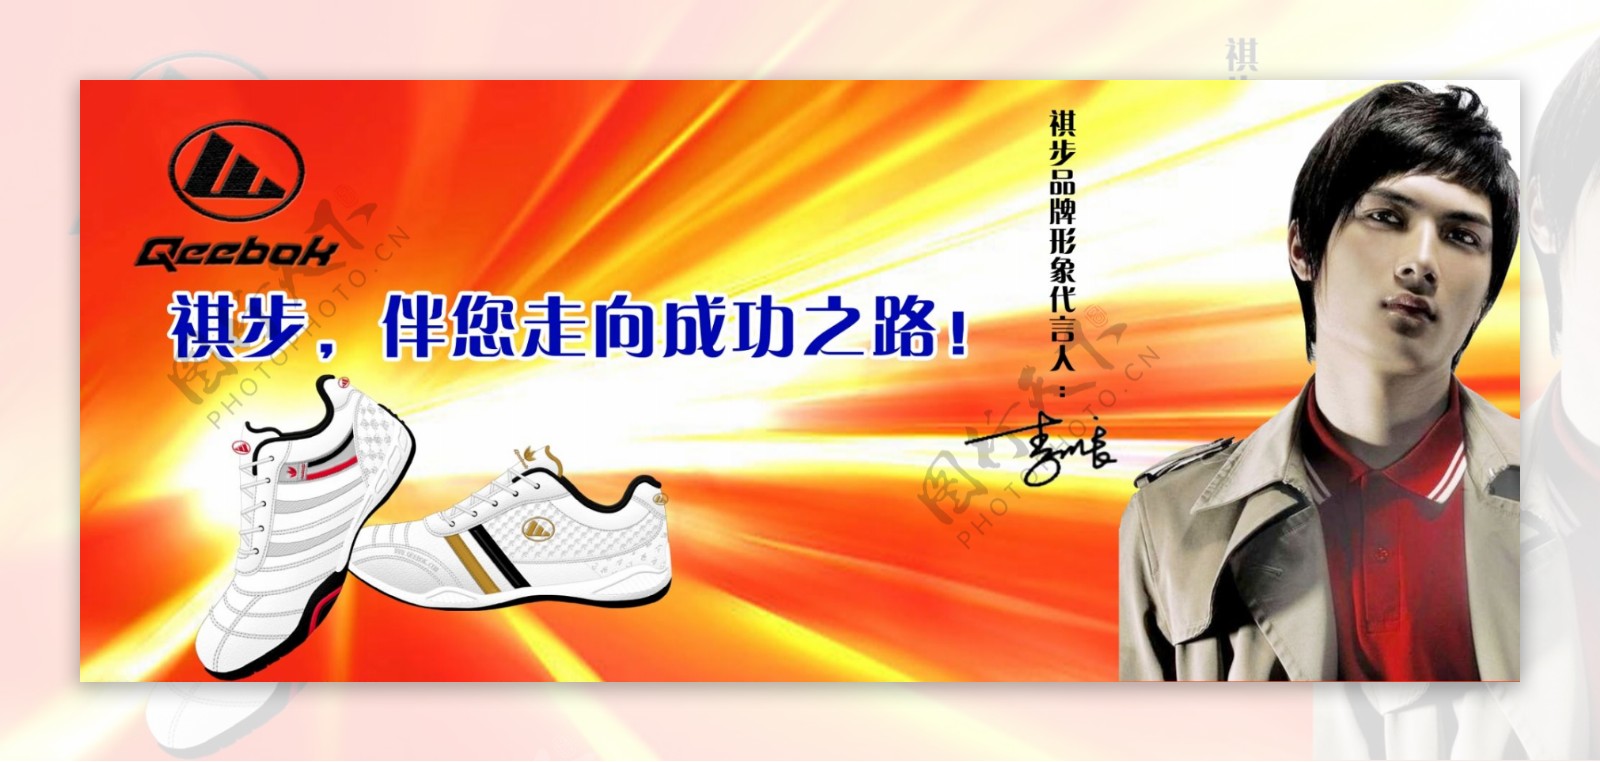 祺步运动鞋广告图片